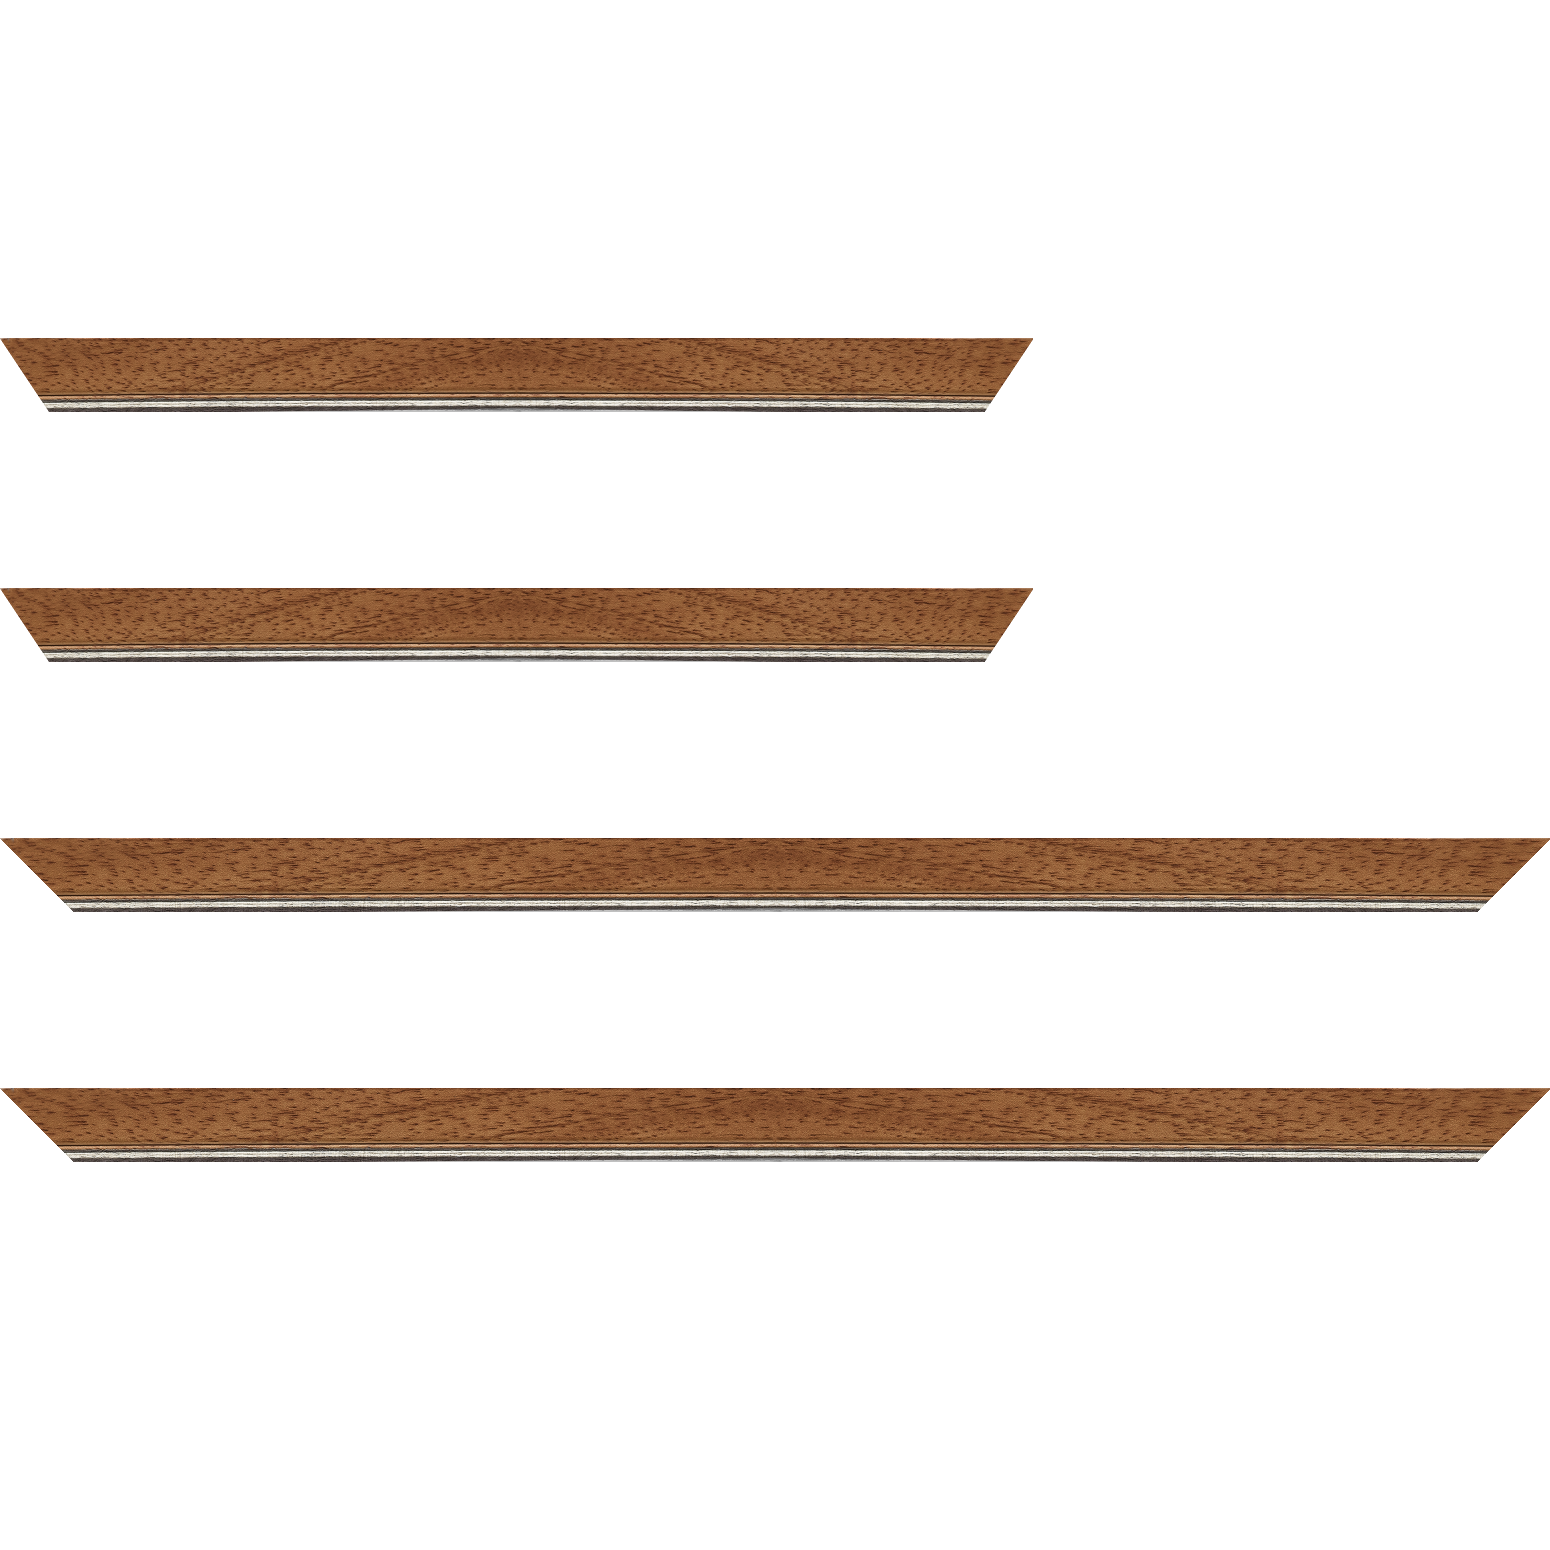 Baguette bois profil plat largeur 2.5cm couleur marron ton bois filet argent - 35x24